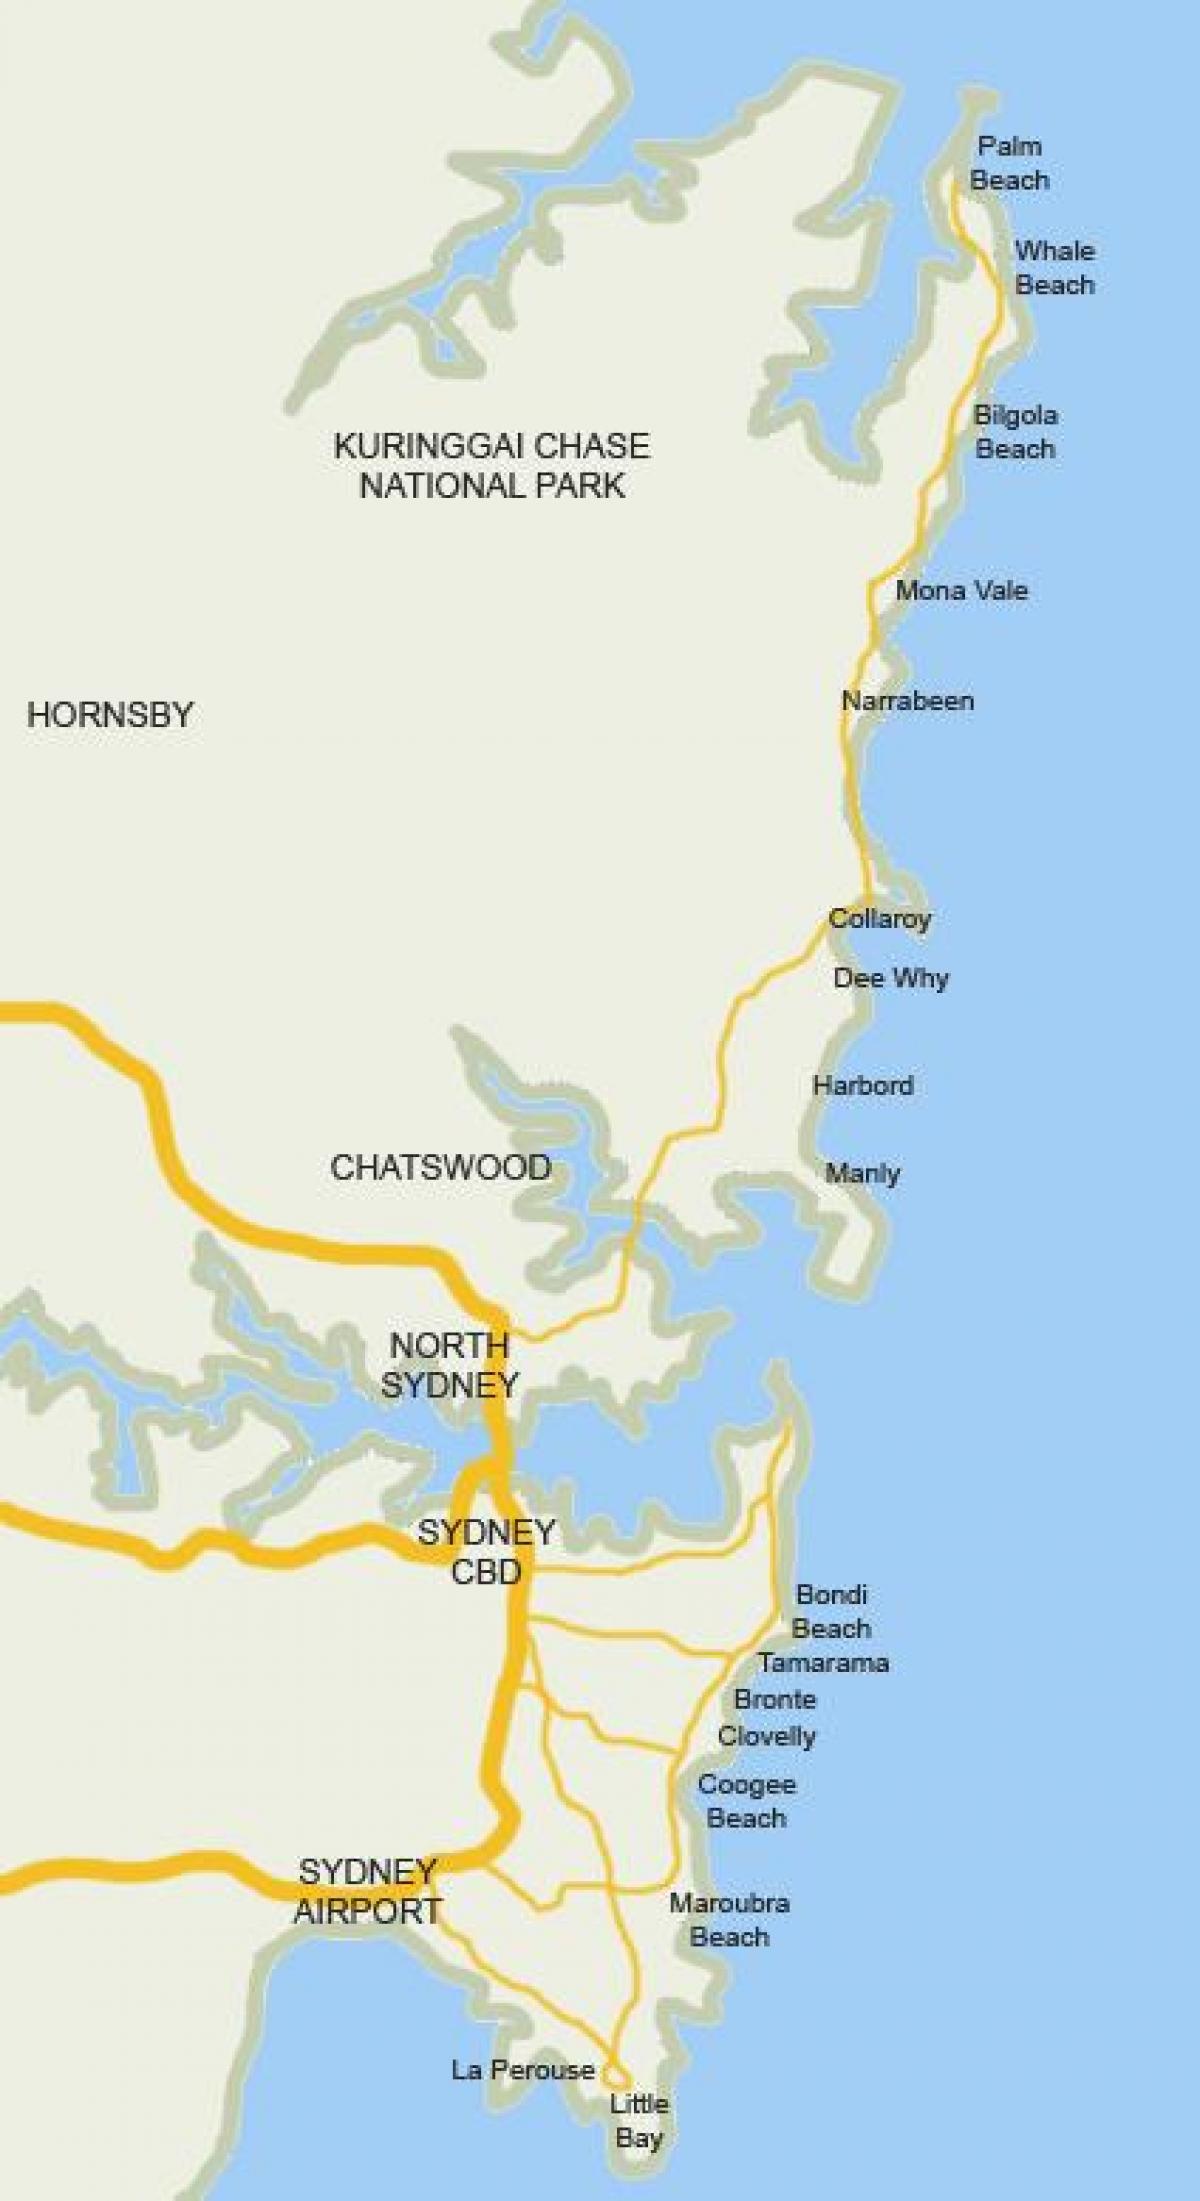 mapa das praias de sydney